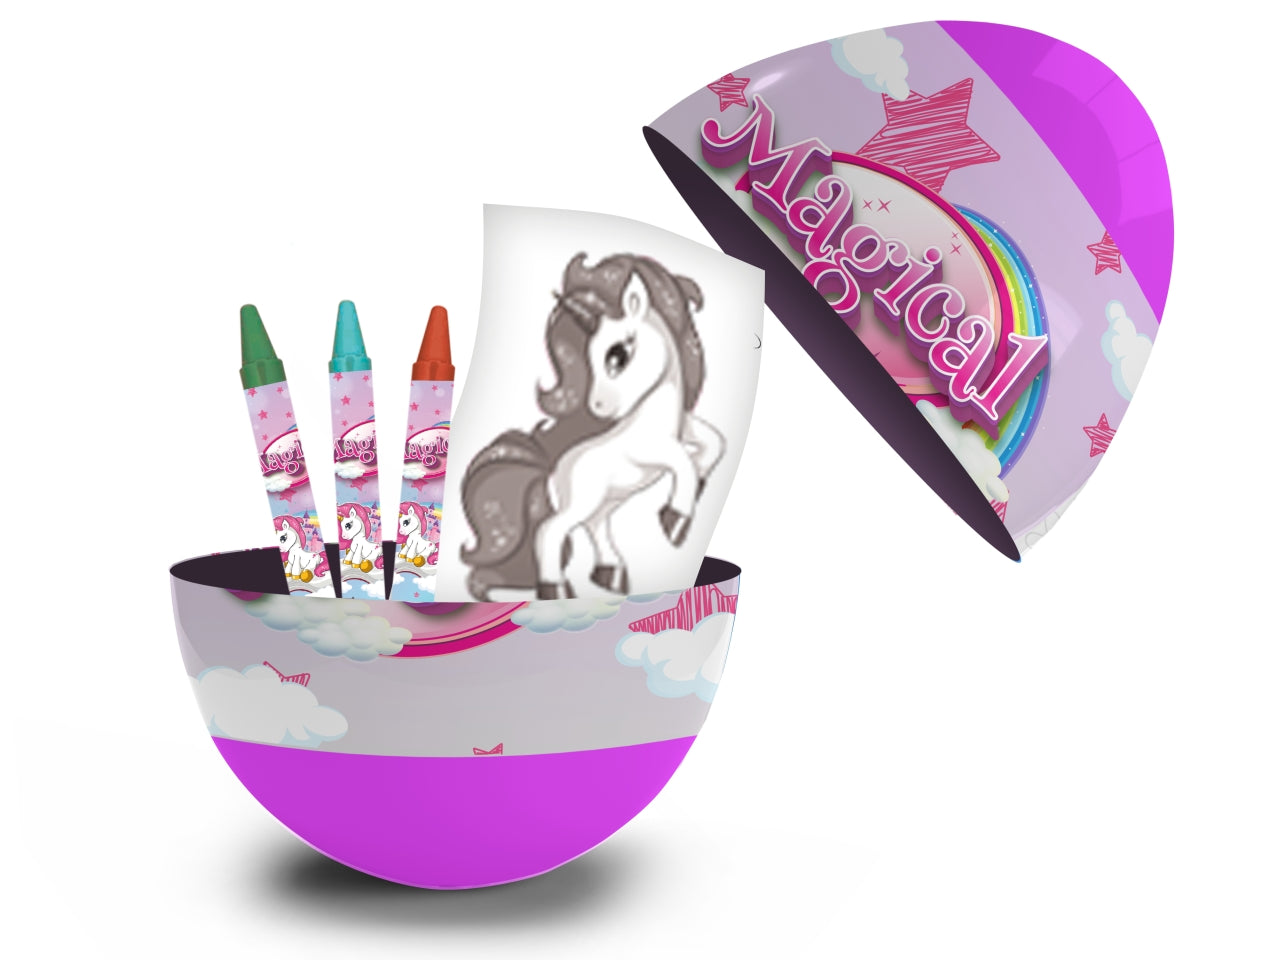 Kit colori Unicorno per bimba, ovetto sorpresa con pastelli a cera e foglio da colorare - MC Group